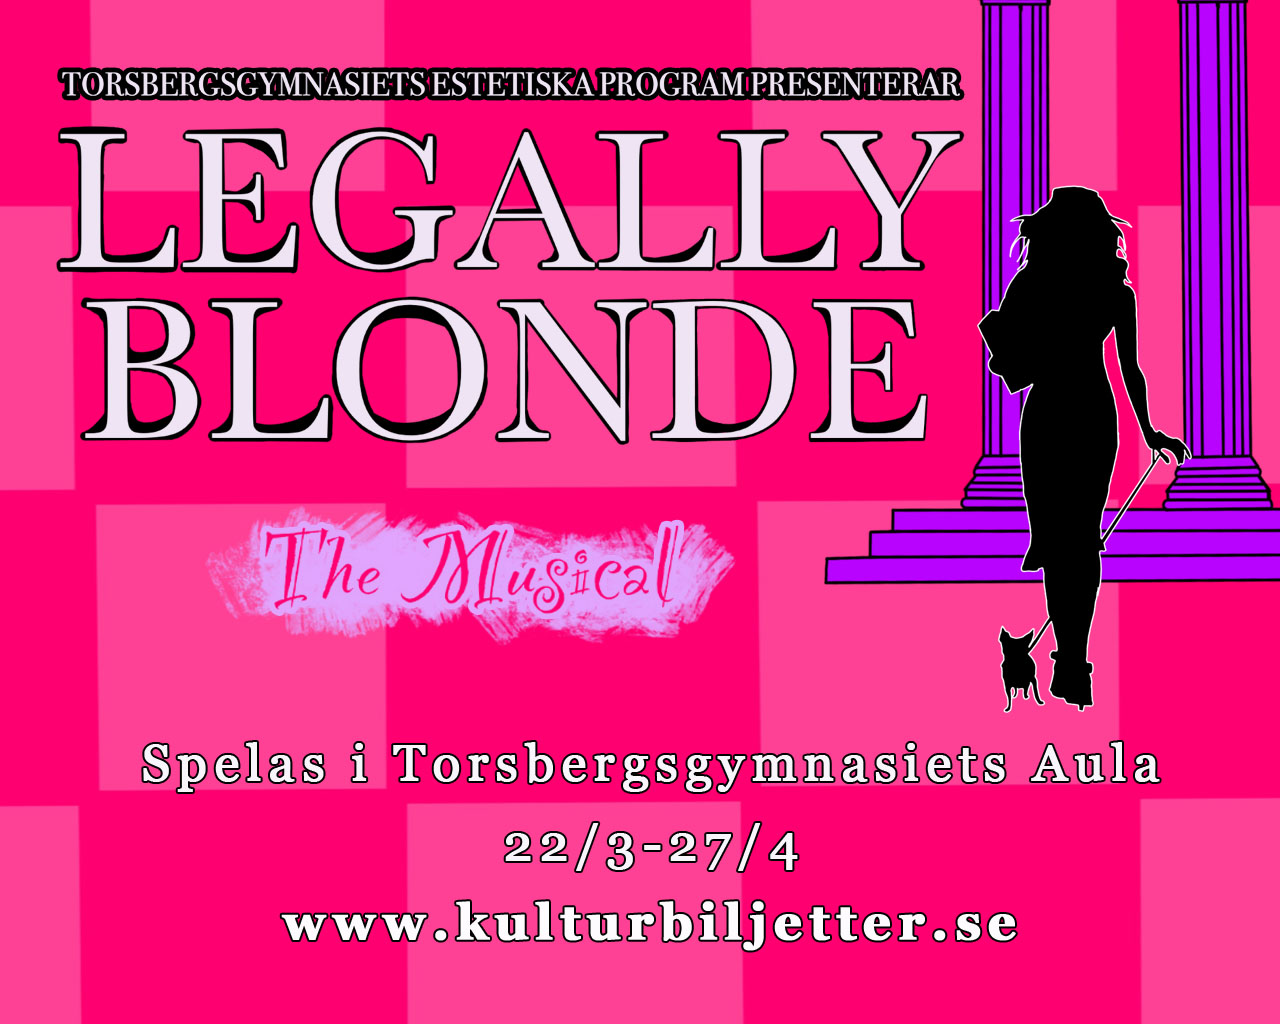 Legally blonde - the musical. Siluett av kvinna med liten hund. 22/3-27/4 www.kulturbiljetter.se, Torsbergsgymnasiets aula.